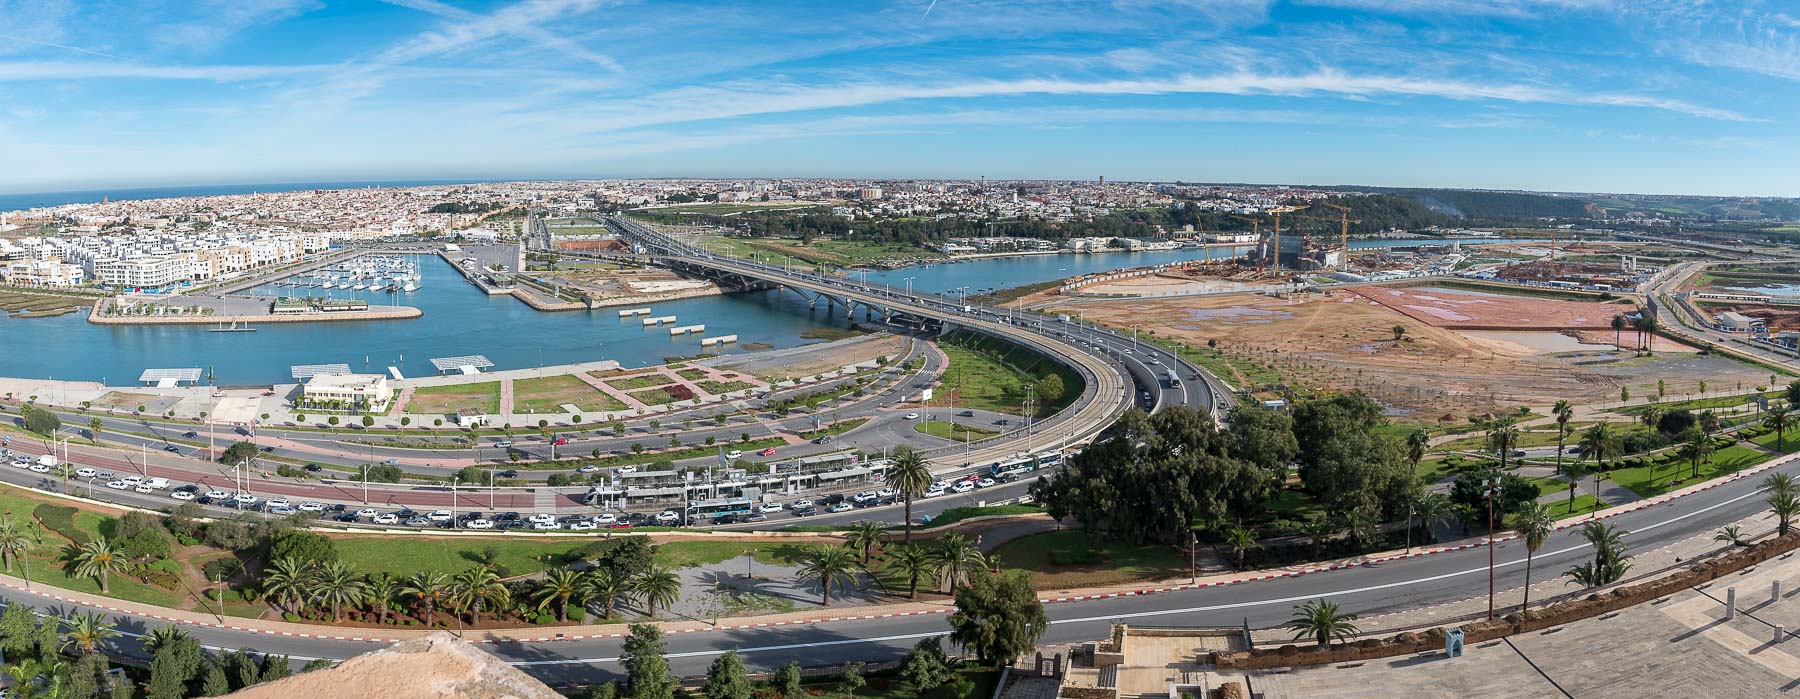 Bridge constructing project Rabat